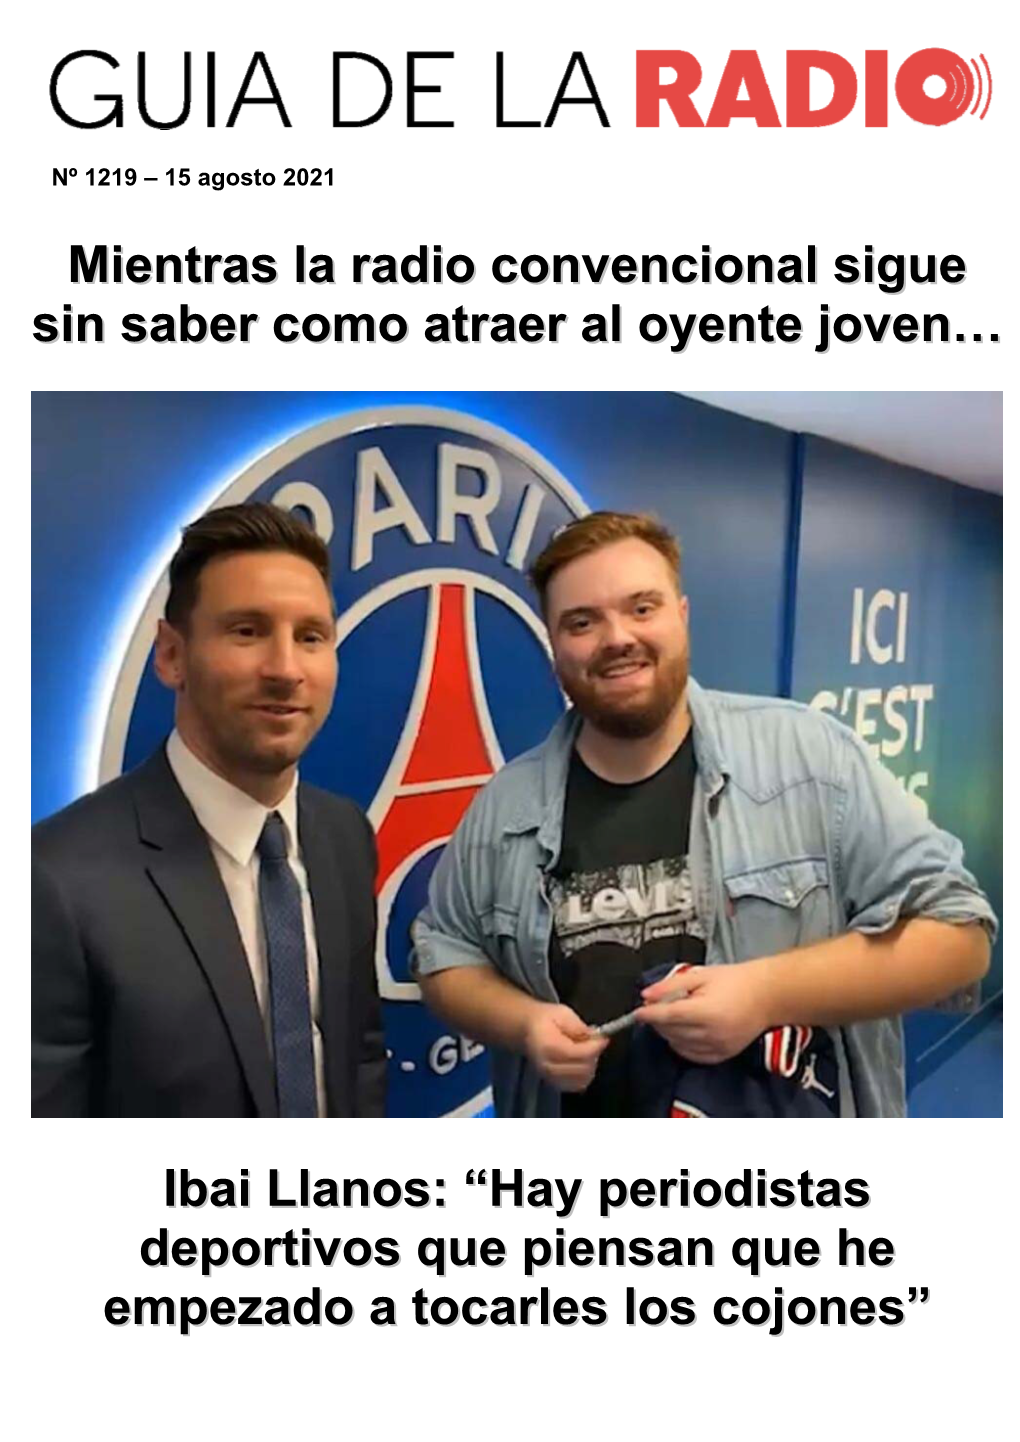 Ibai Llanos, El Streamer Que Irrita Al Periodismo Deportivo